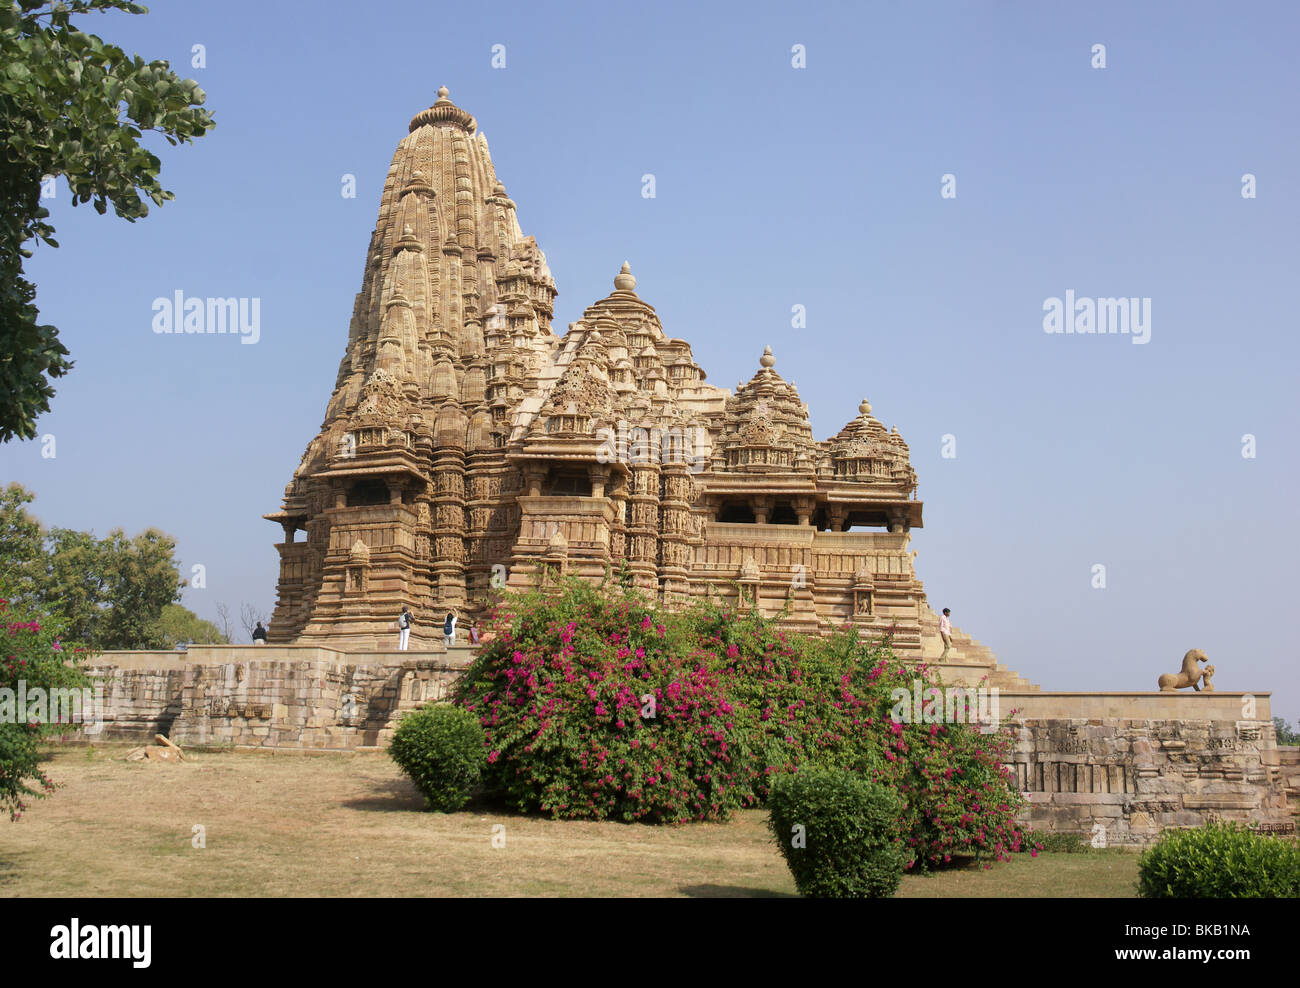 Kandariya Mahadeva Temple at Khajuraho in India, Asia Stock Photo